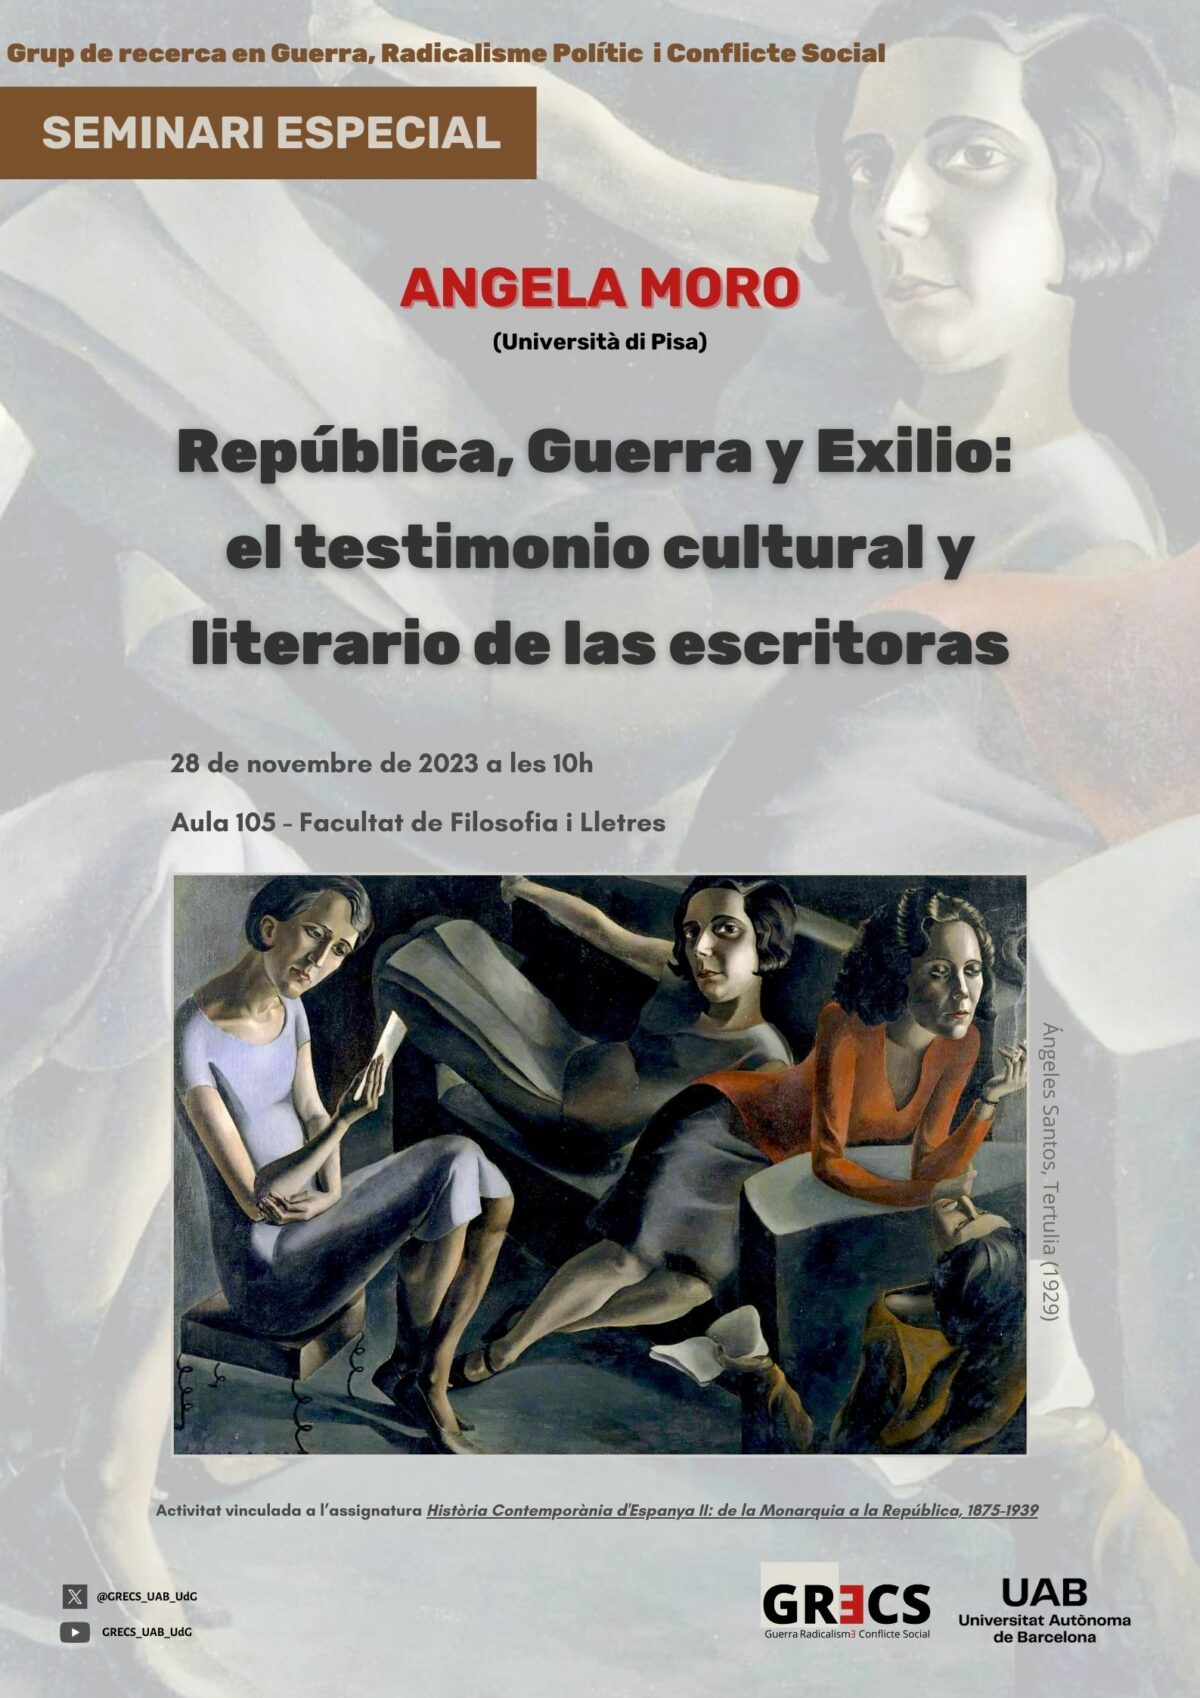 Angela Moro: «República, Guerra y Exilio: el testimonio cultural y literario de las escritoras»